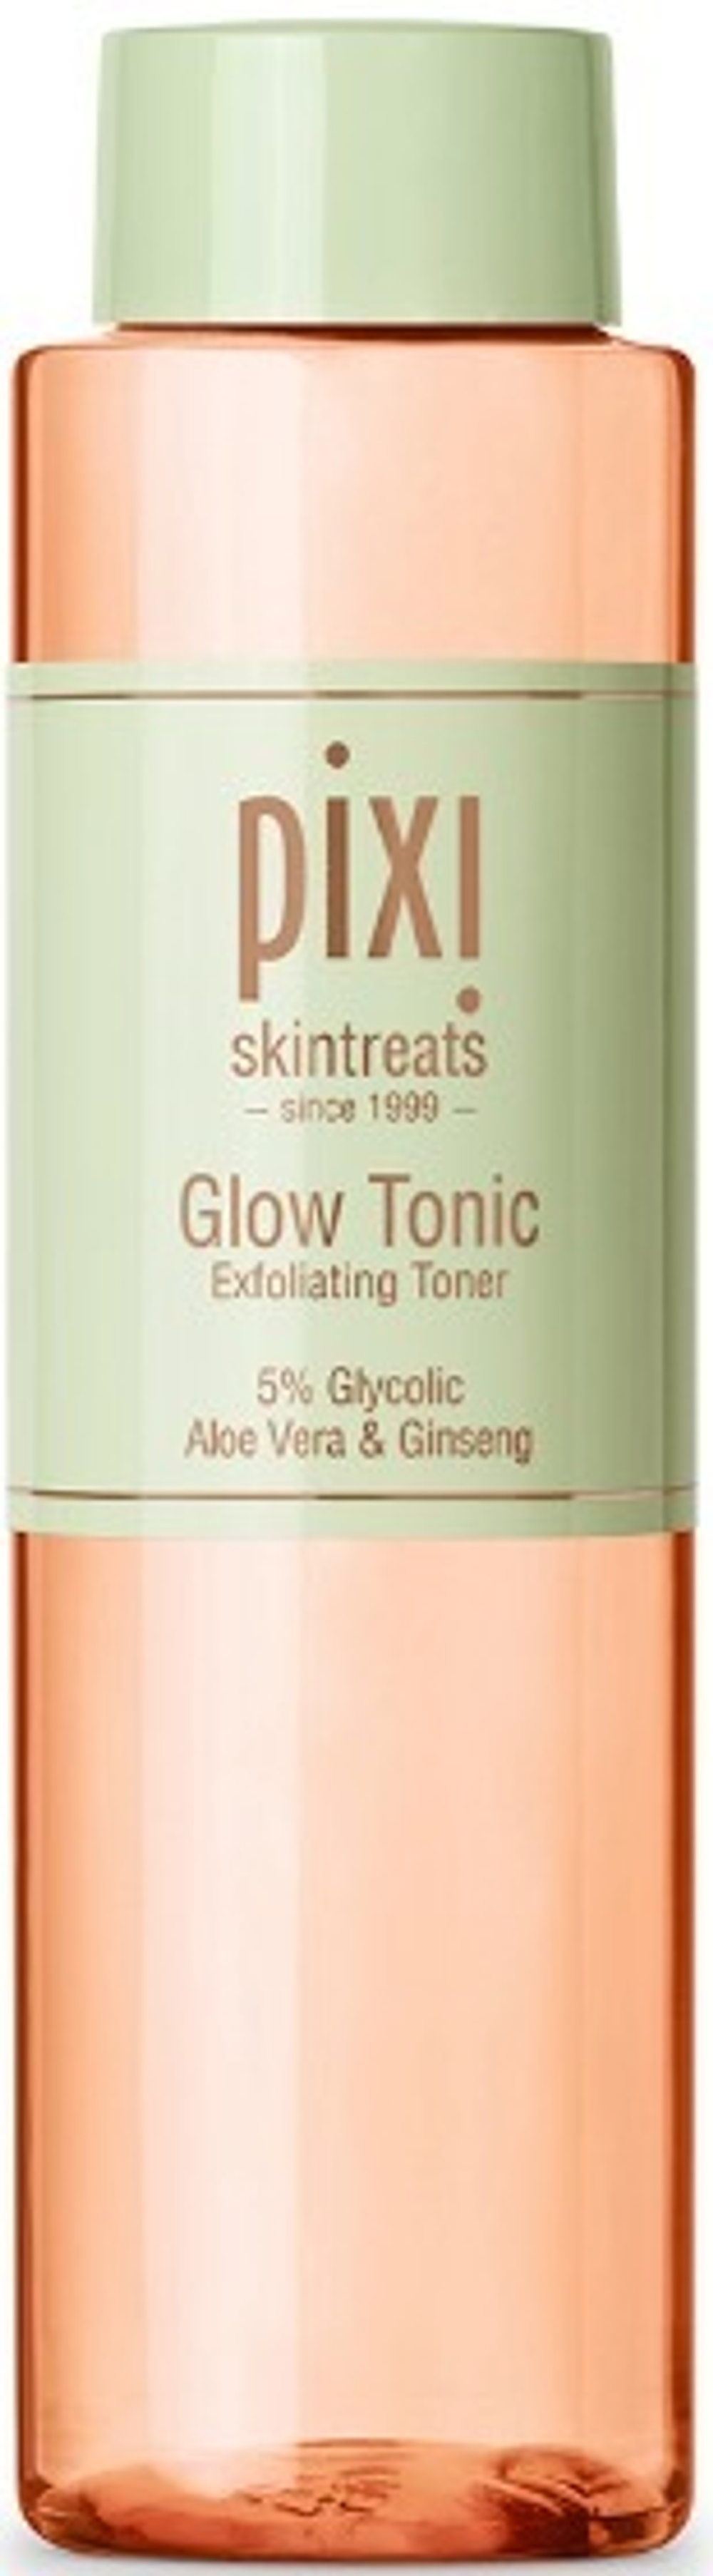 Pixi Glow Tonic тоник для лица 250мл